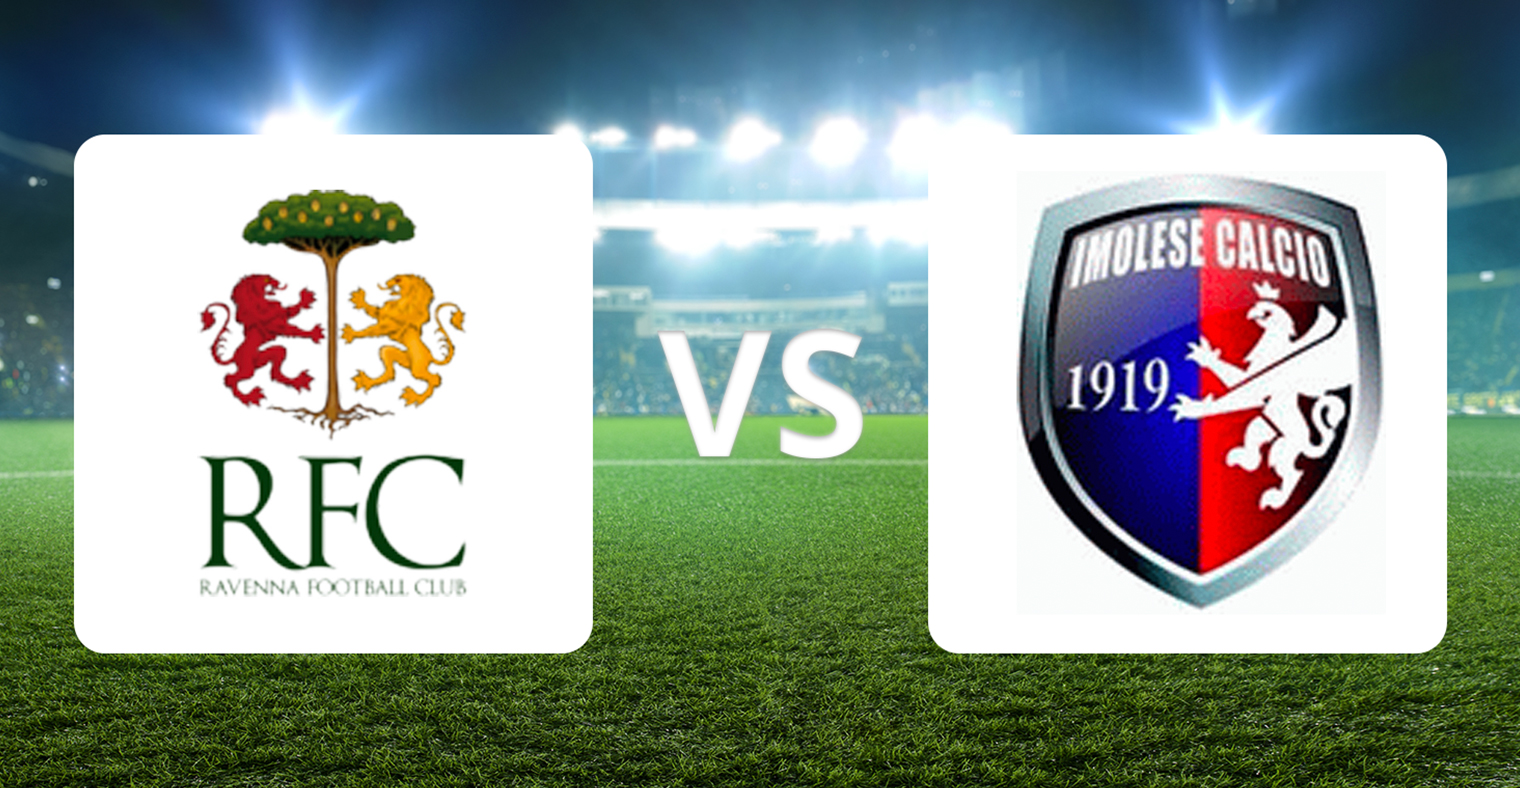 Ravenna FC vs Imolese